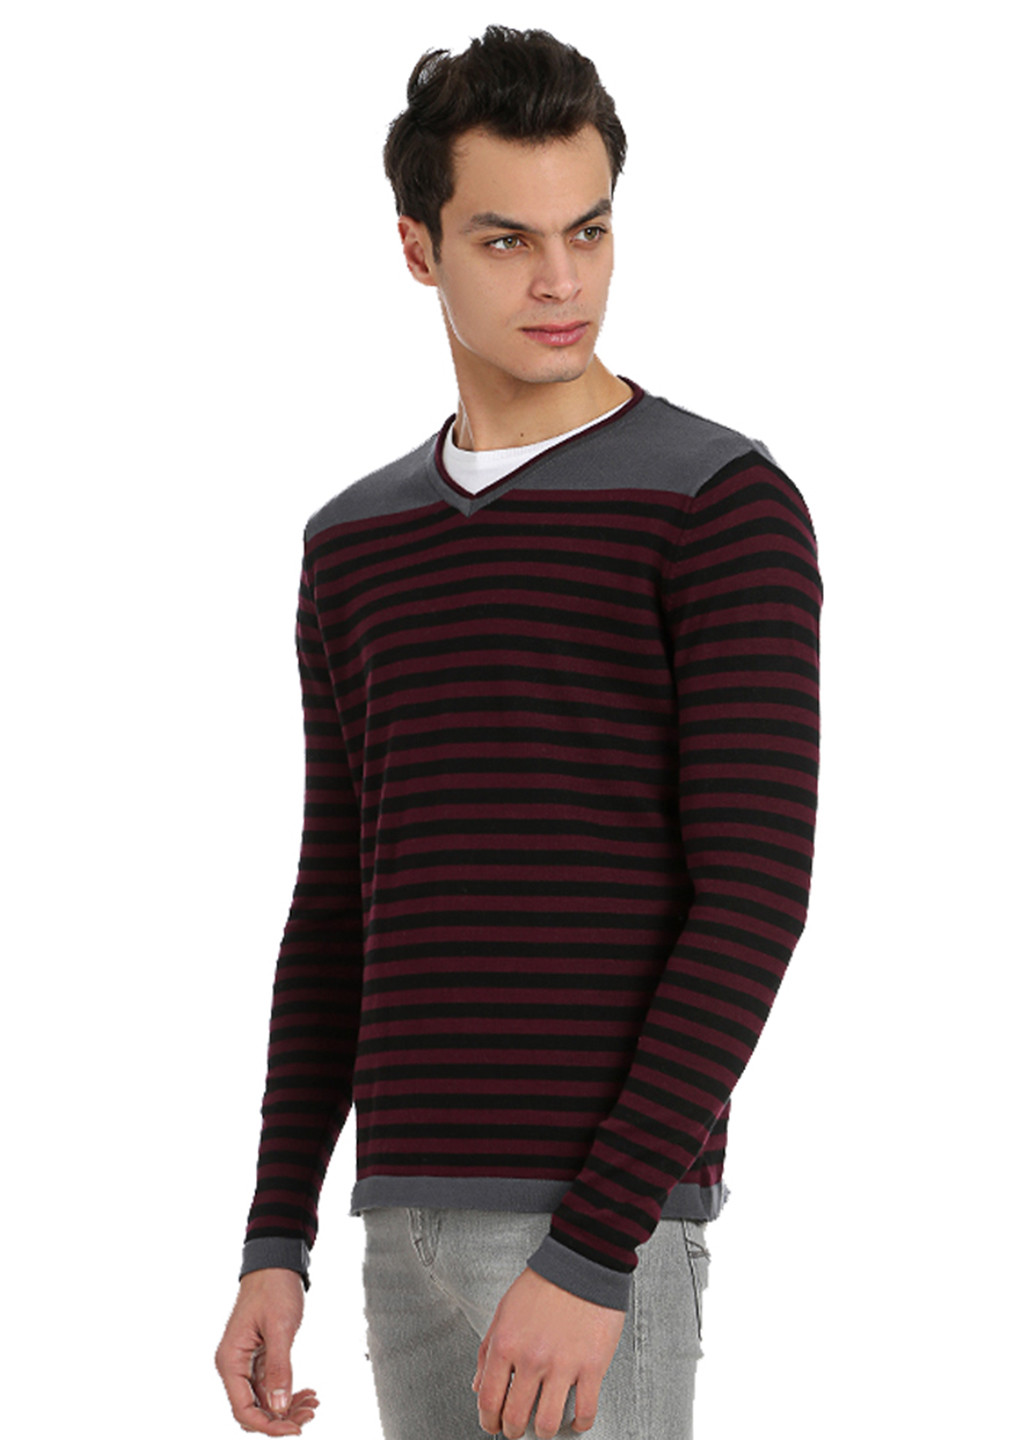 Бордовый демисезонный пуловер пуловер Яavin